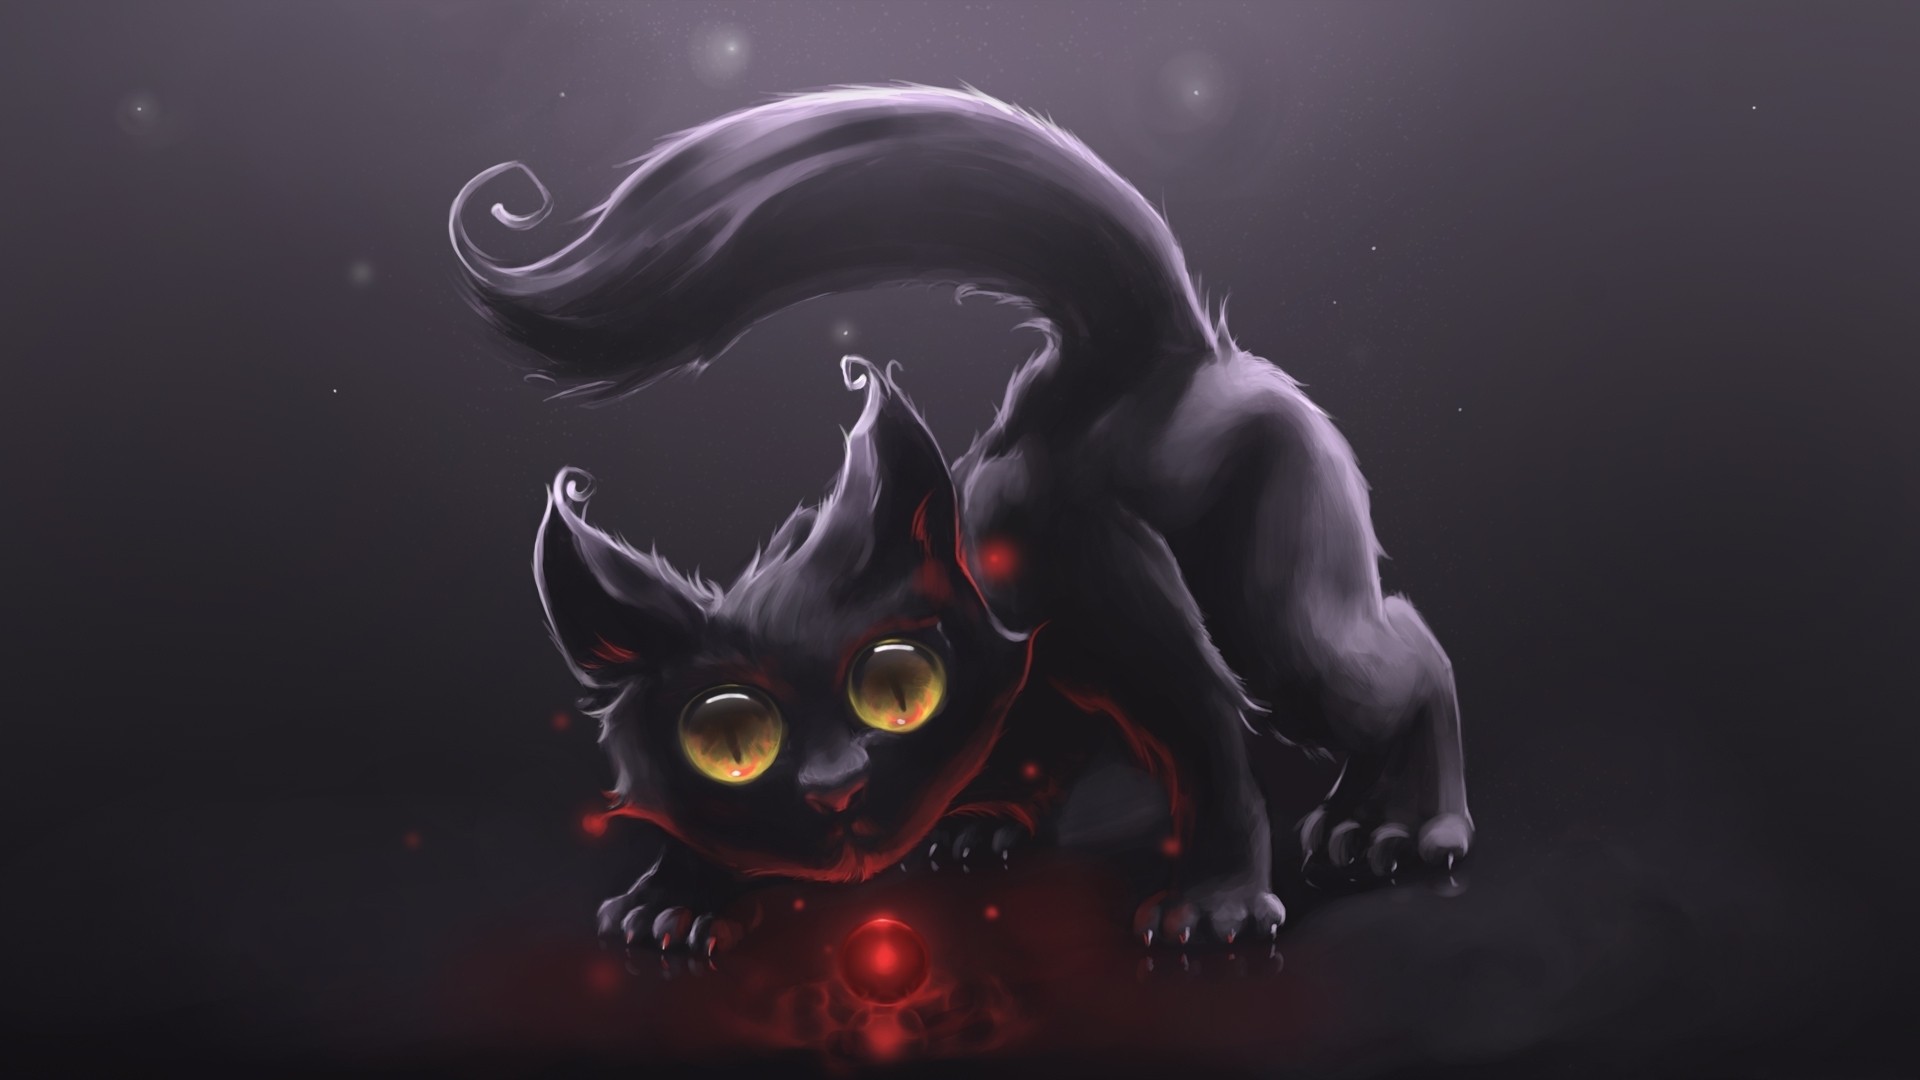 Evil Cheshire Cat Wallpaper - WallpaperSafari